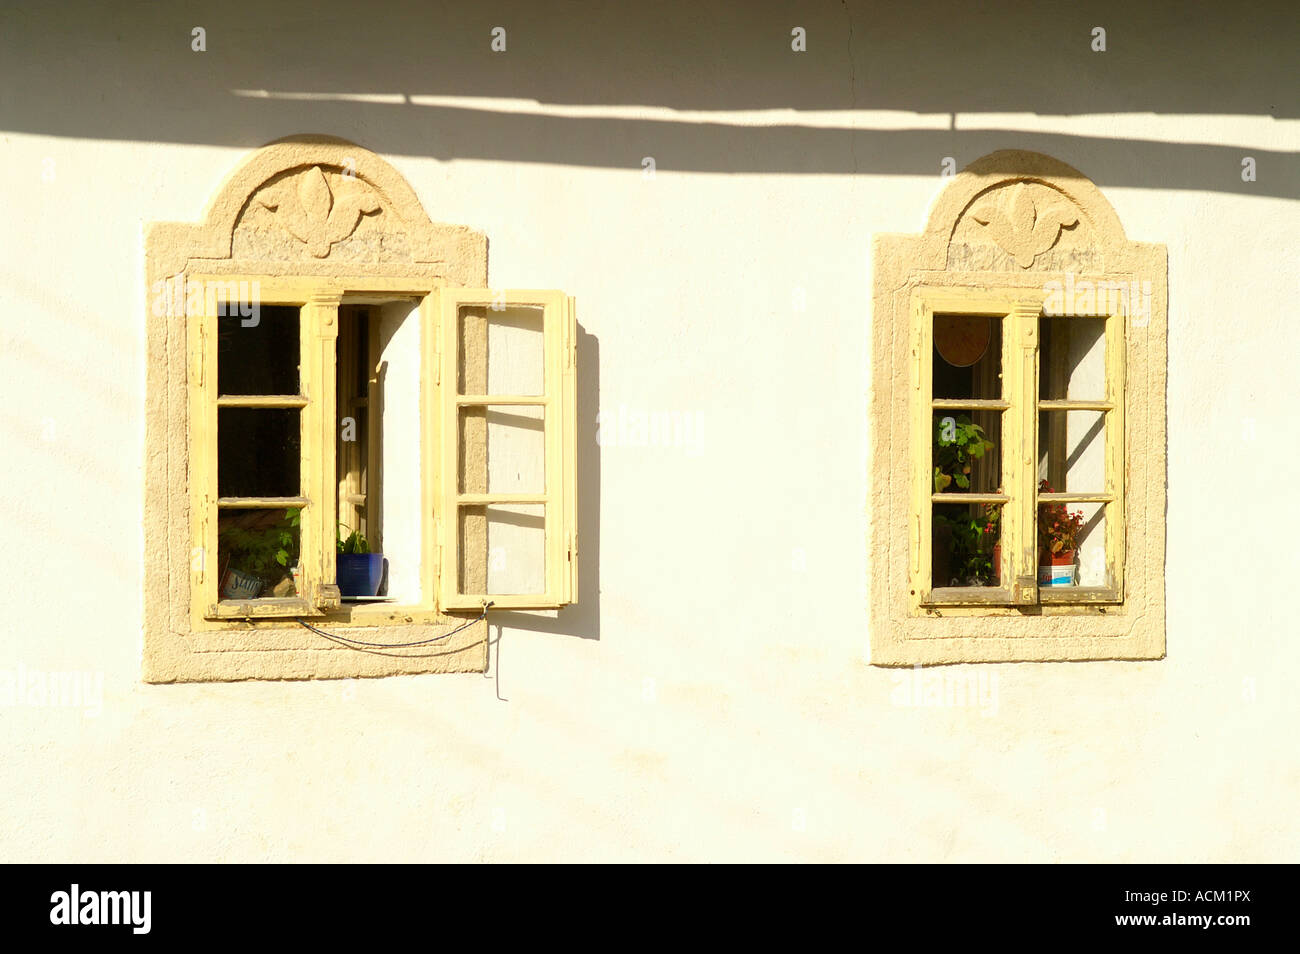 Zwei Fenster auf weiße Fassade des traditionellen slowakischen Volkshaus in  Sekier, Slowakei Stockfotografie - Alamy